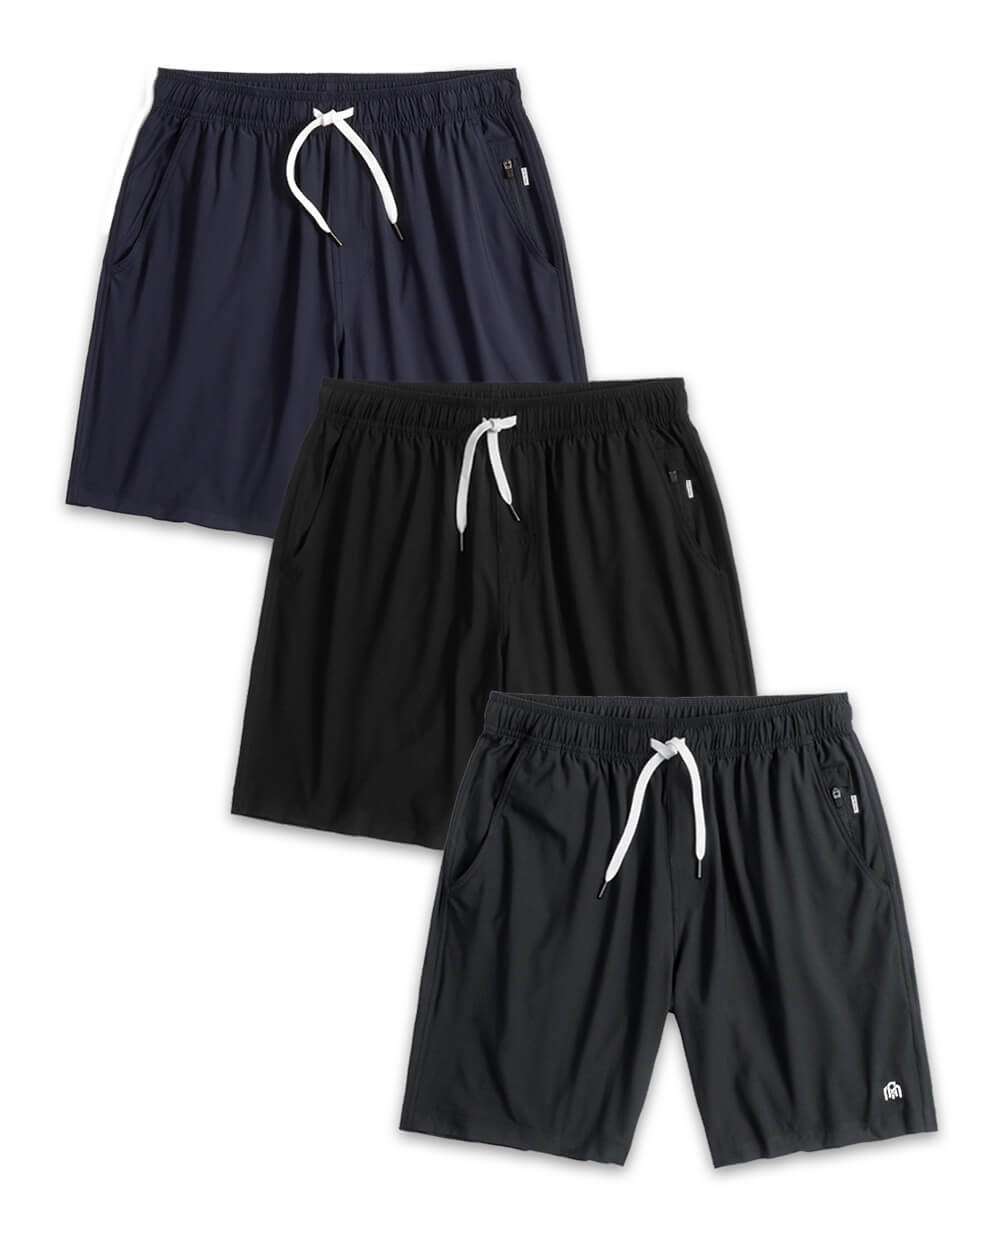 Basic Athletic Shorts Custom 3 Pack-Front